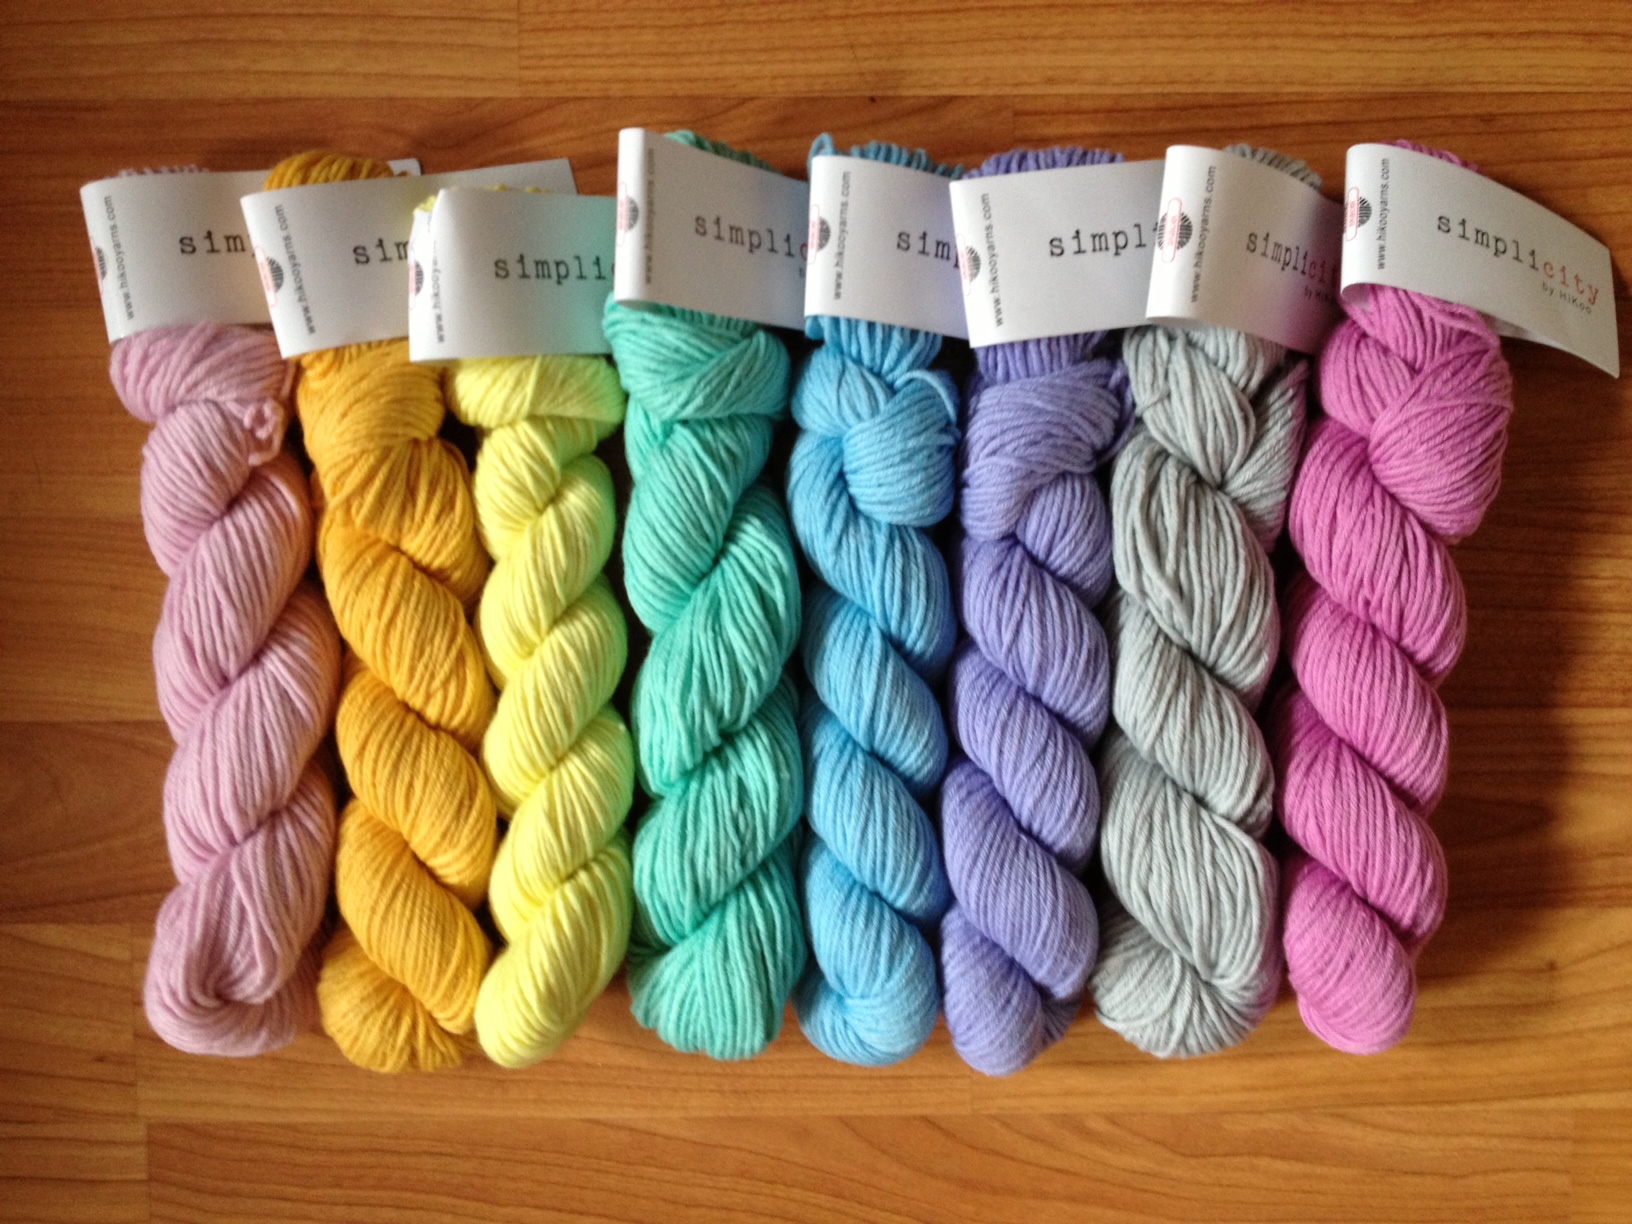 hikoo simplicity rainbow of yarn